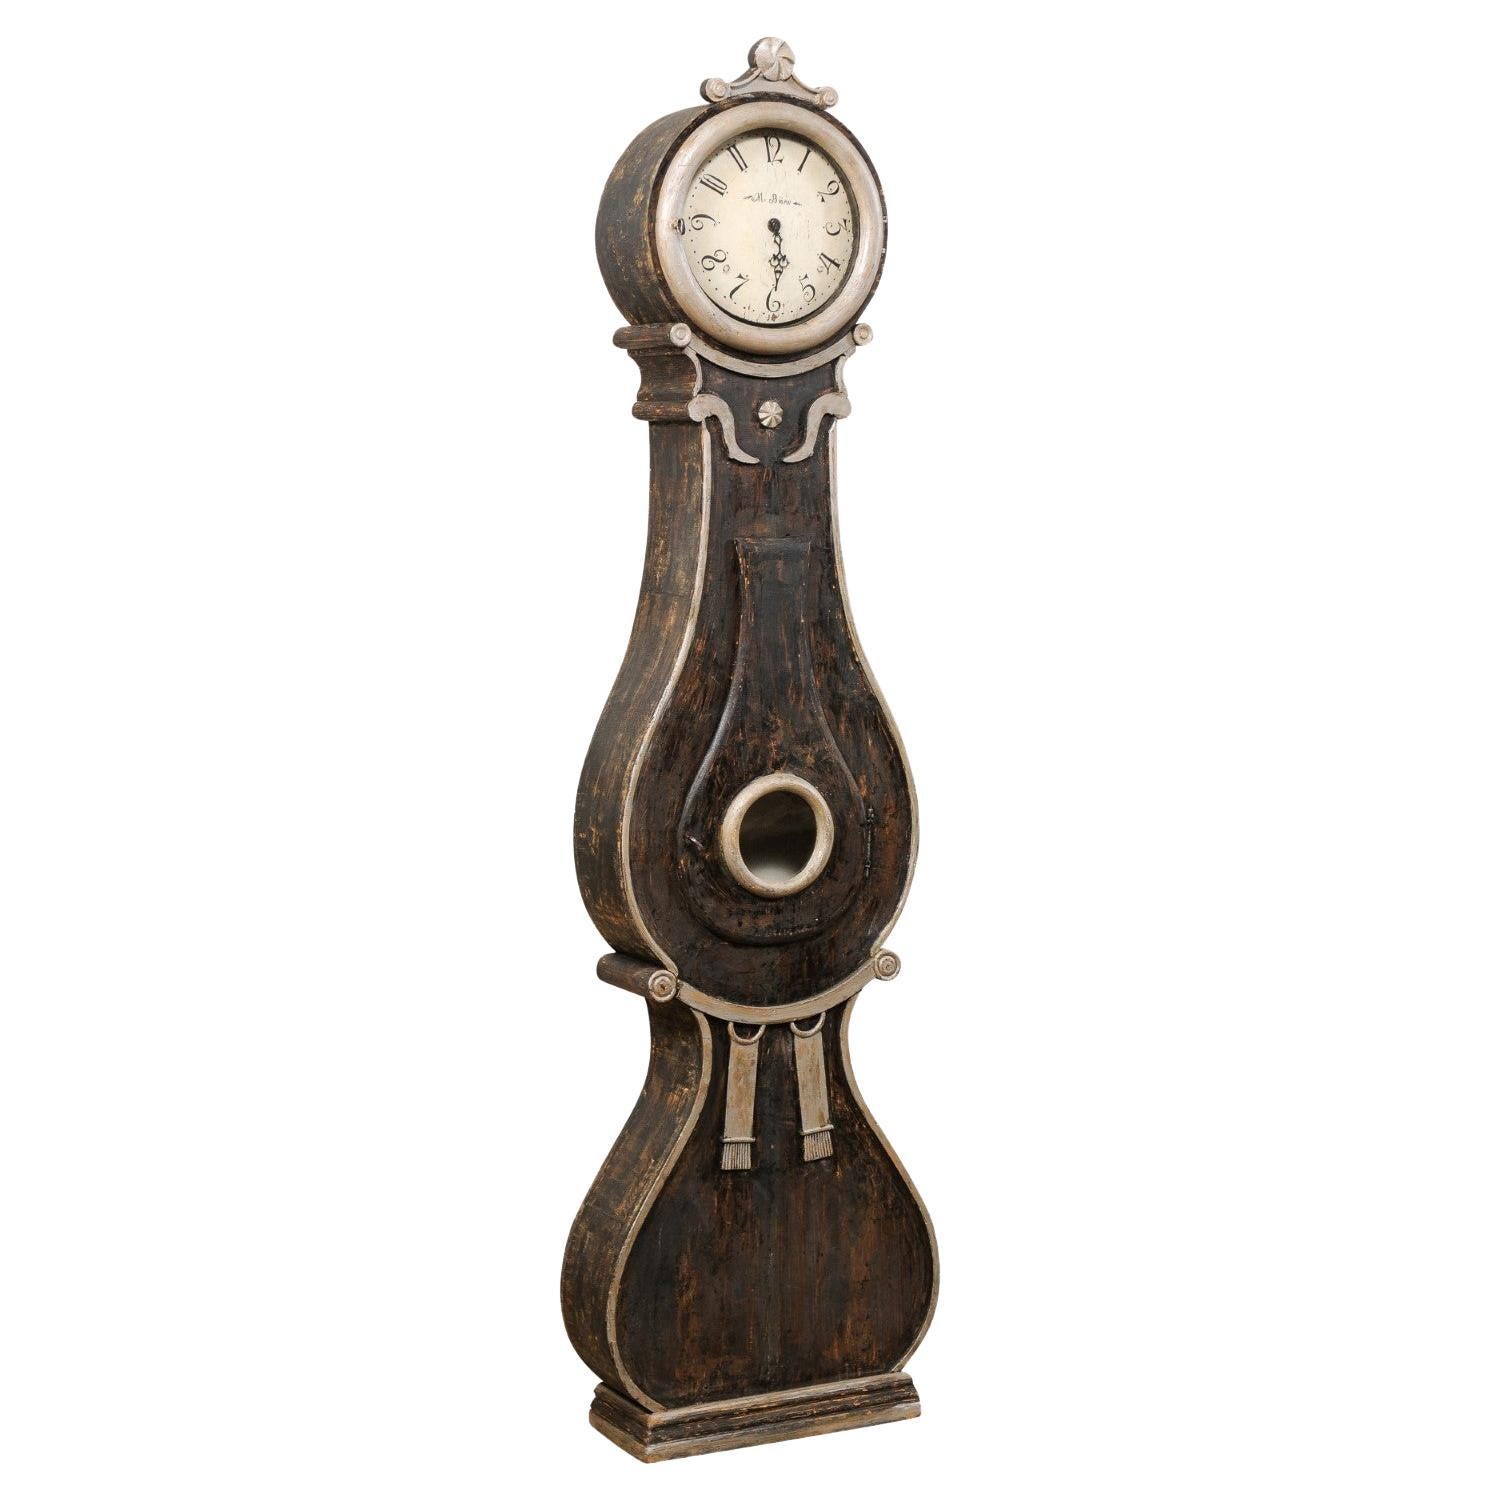 Reloj de pie Fryksdahl sueco de principios del siglo XIX 'CON esfera y movimiento metálicos originales'